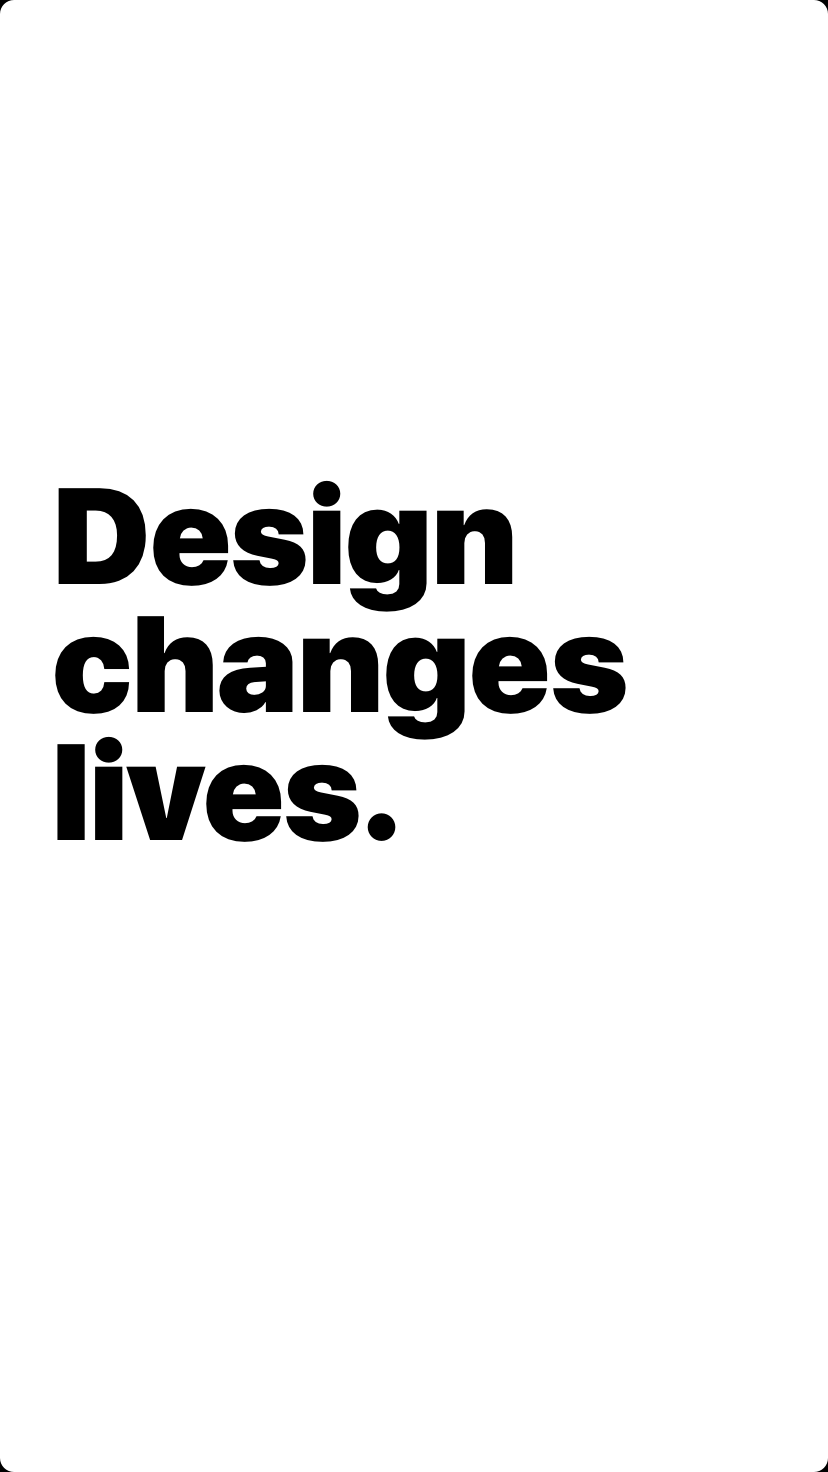 Design changes lives.